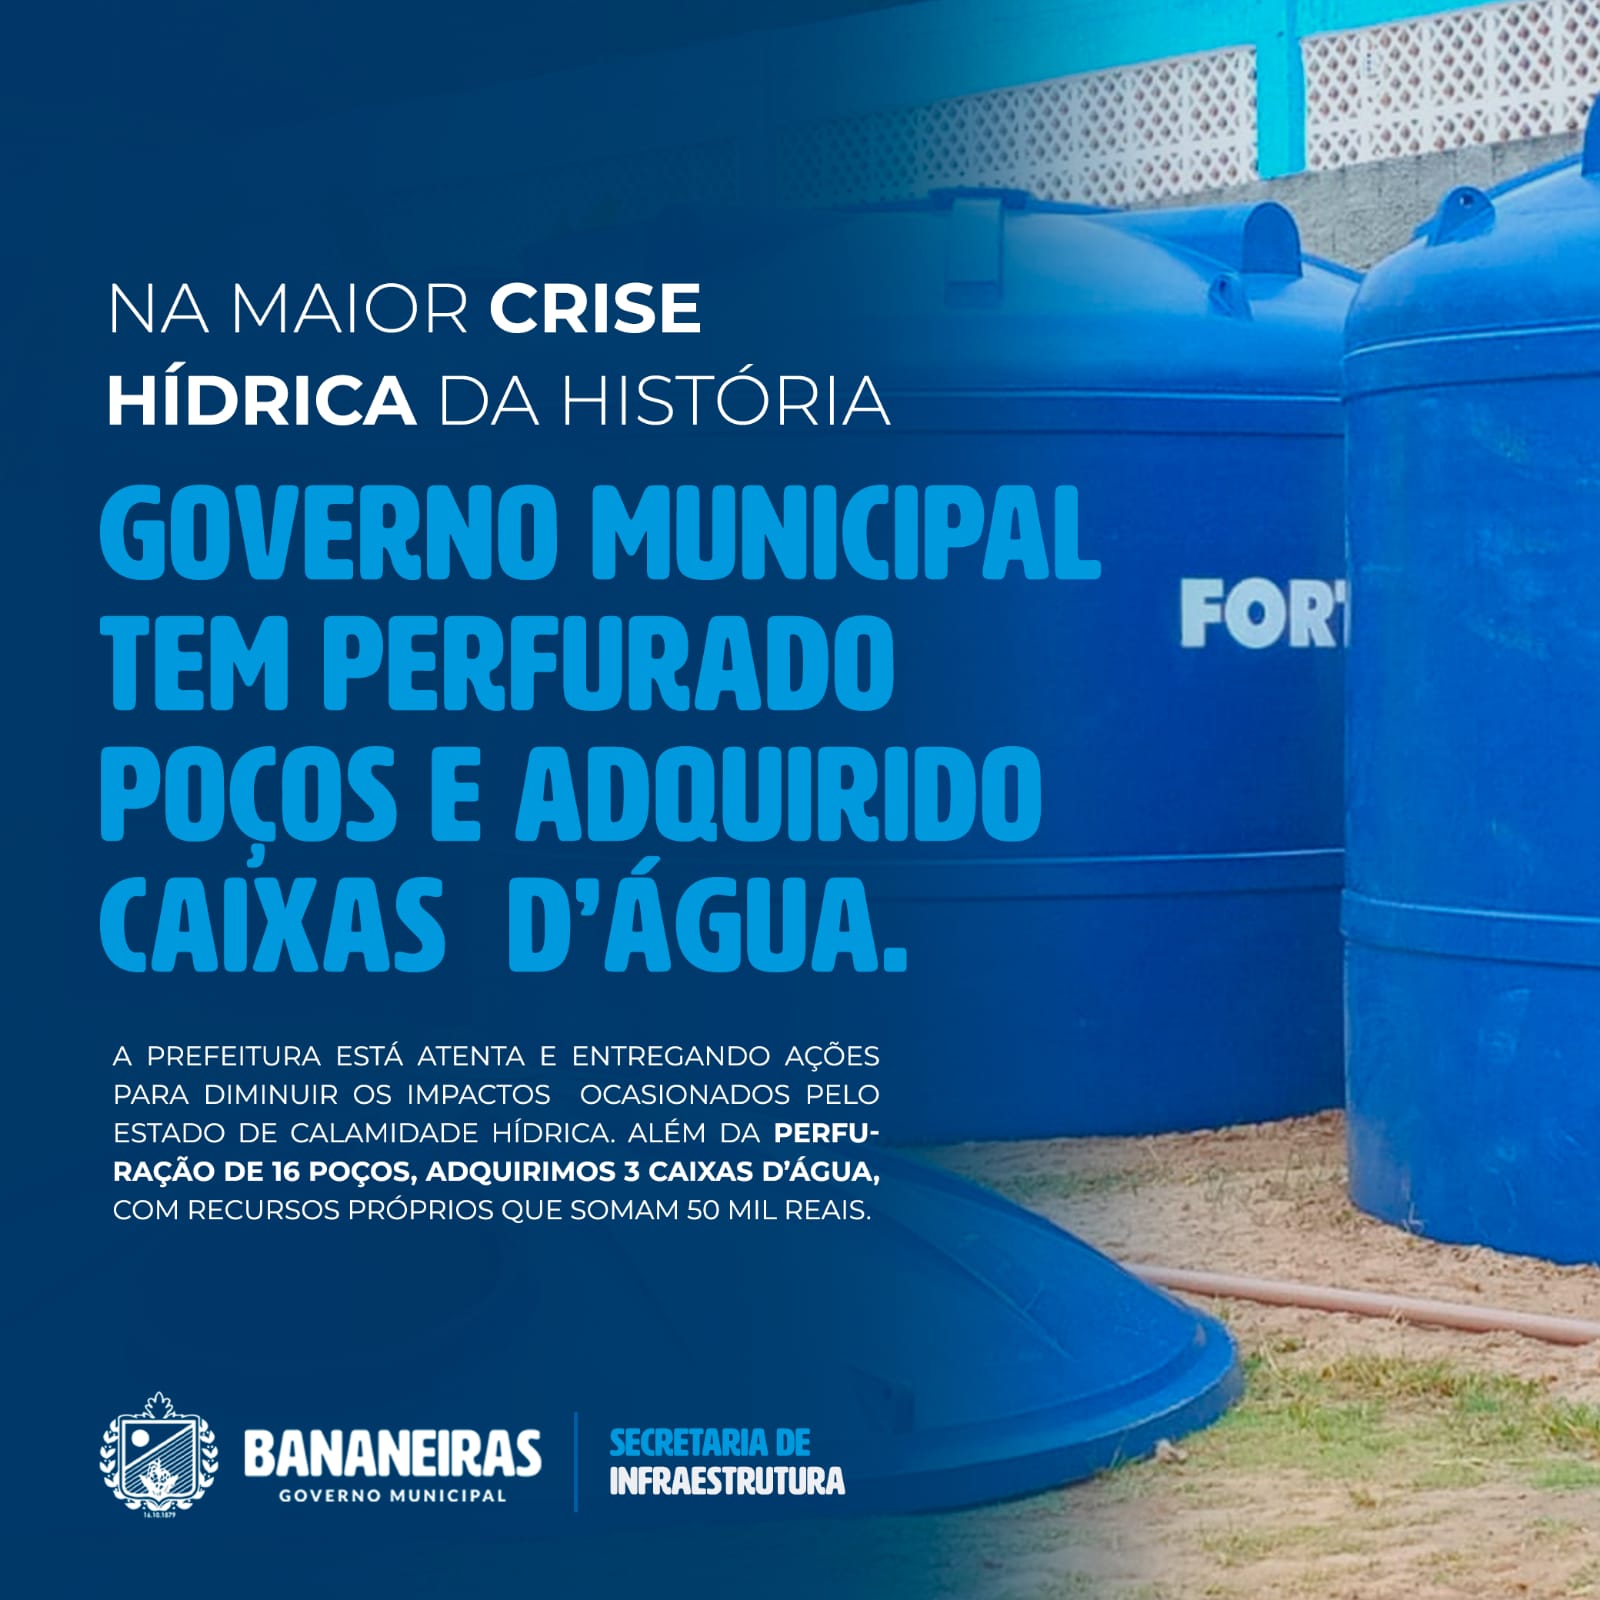 Crise Hídrica: Prefeitura Municipal realiza perfuração de 16 poços artesianos e a aquisição de caixas d’água com recursos próprios